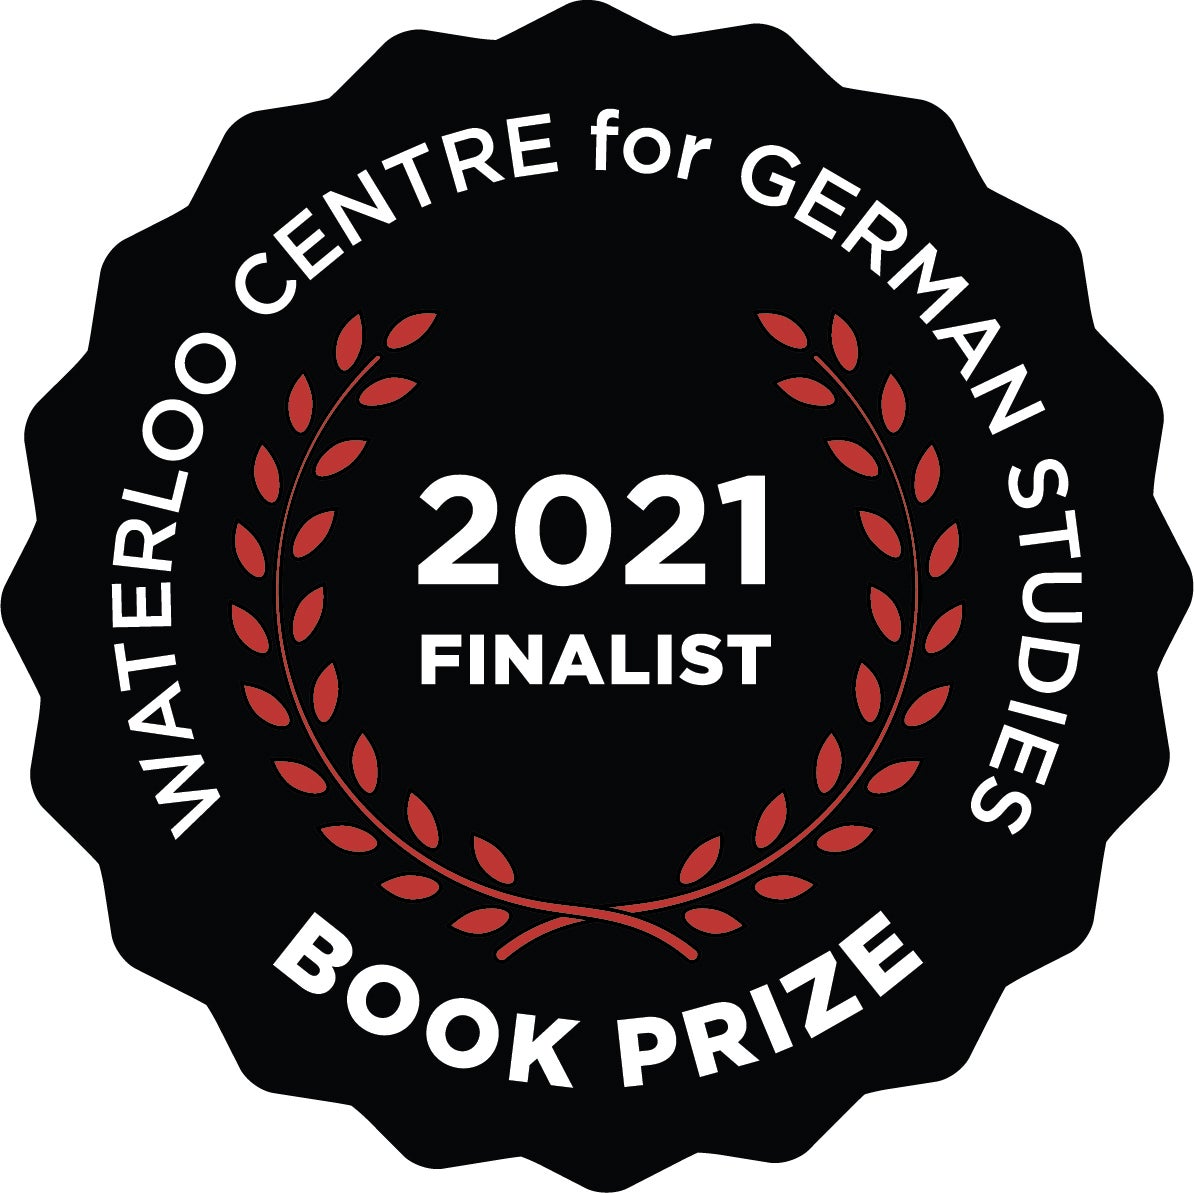 2021 Book Prize Finalist